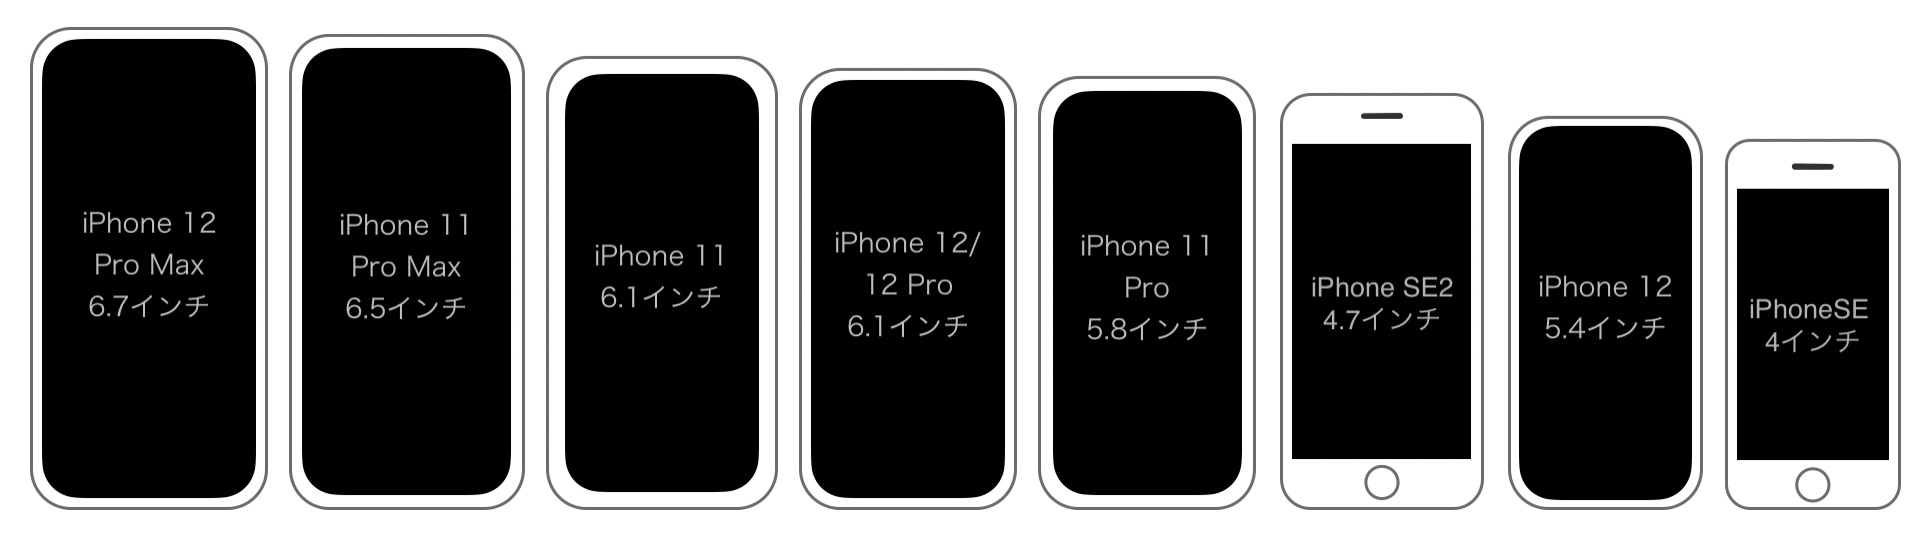 比較 さ iphone 重